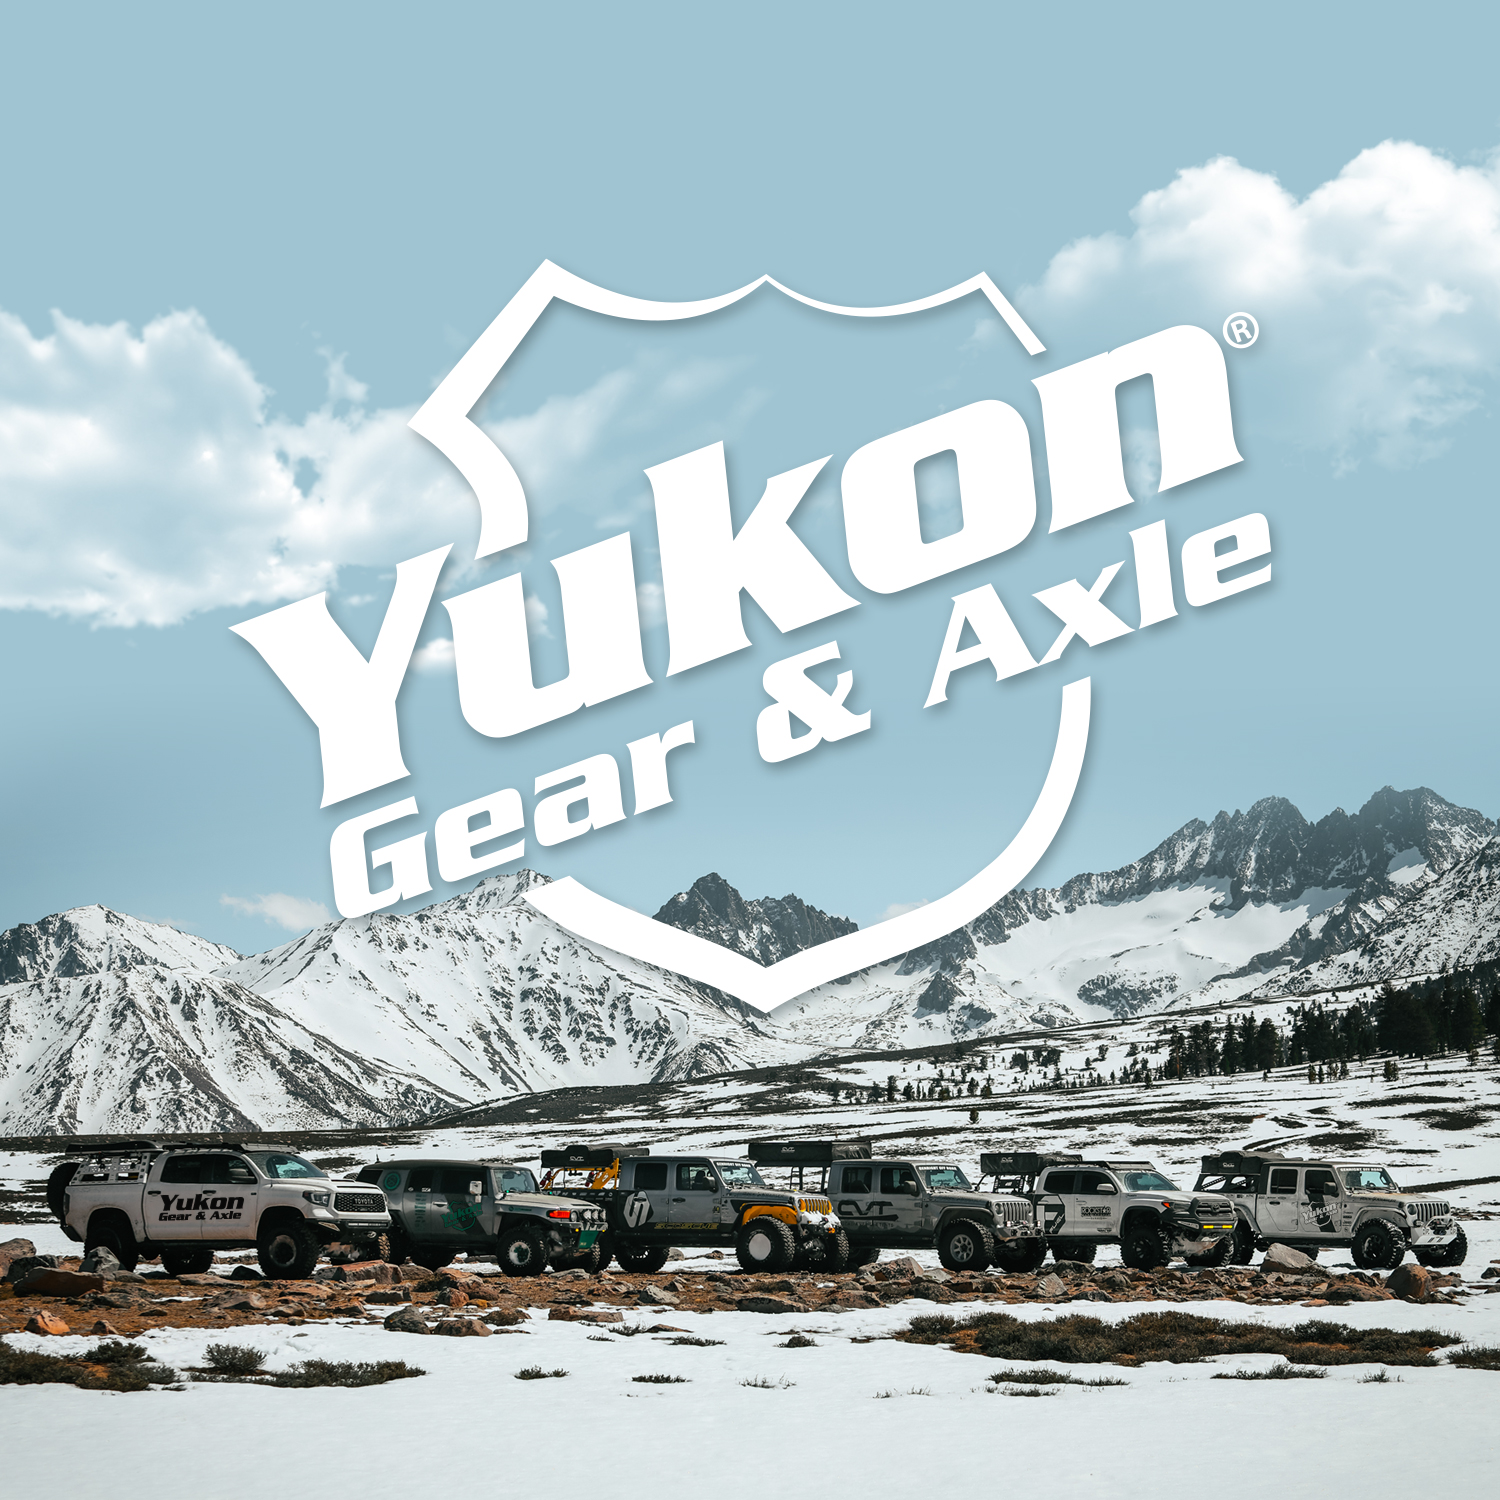 Yukon Chromoly Inner Front Axle for Dana 44 Diff, 30 Spline, LH, 36.13” Long 